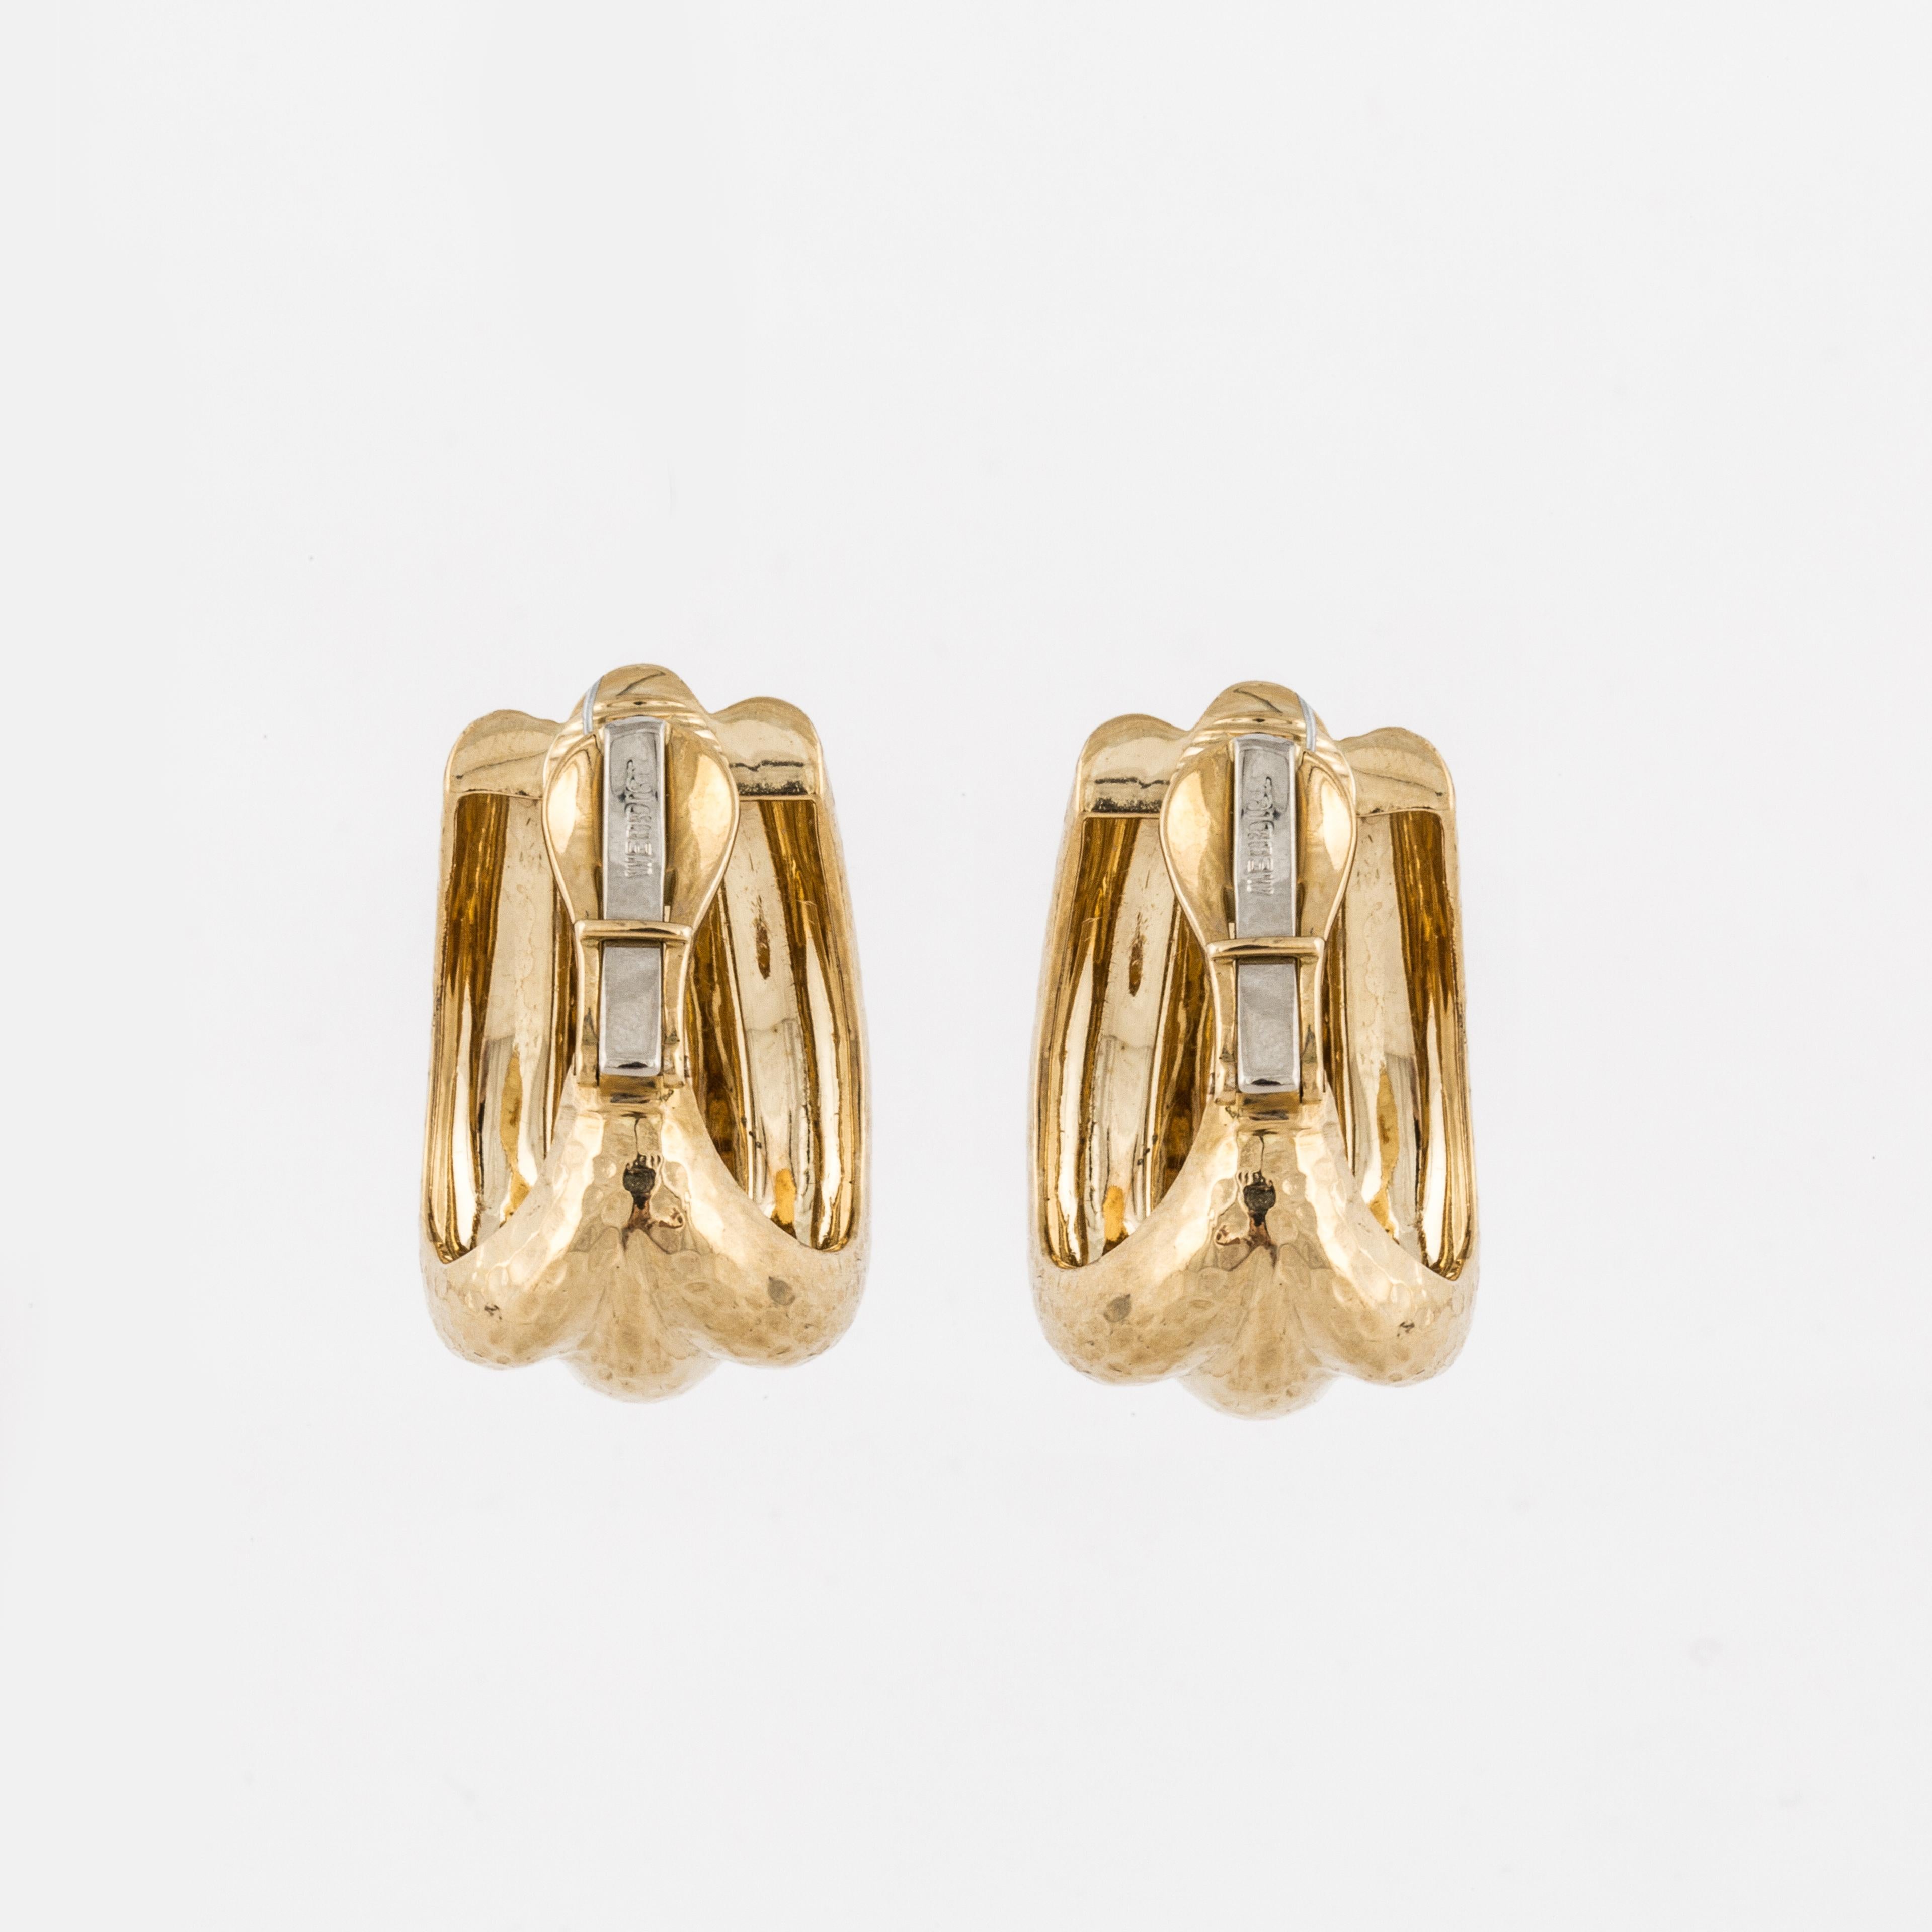 david webb gold earrings